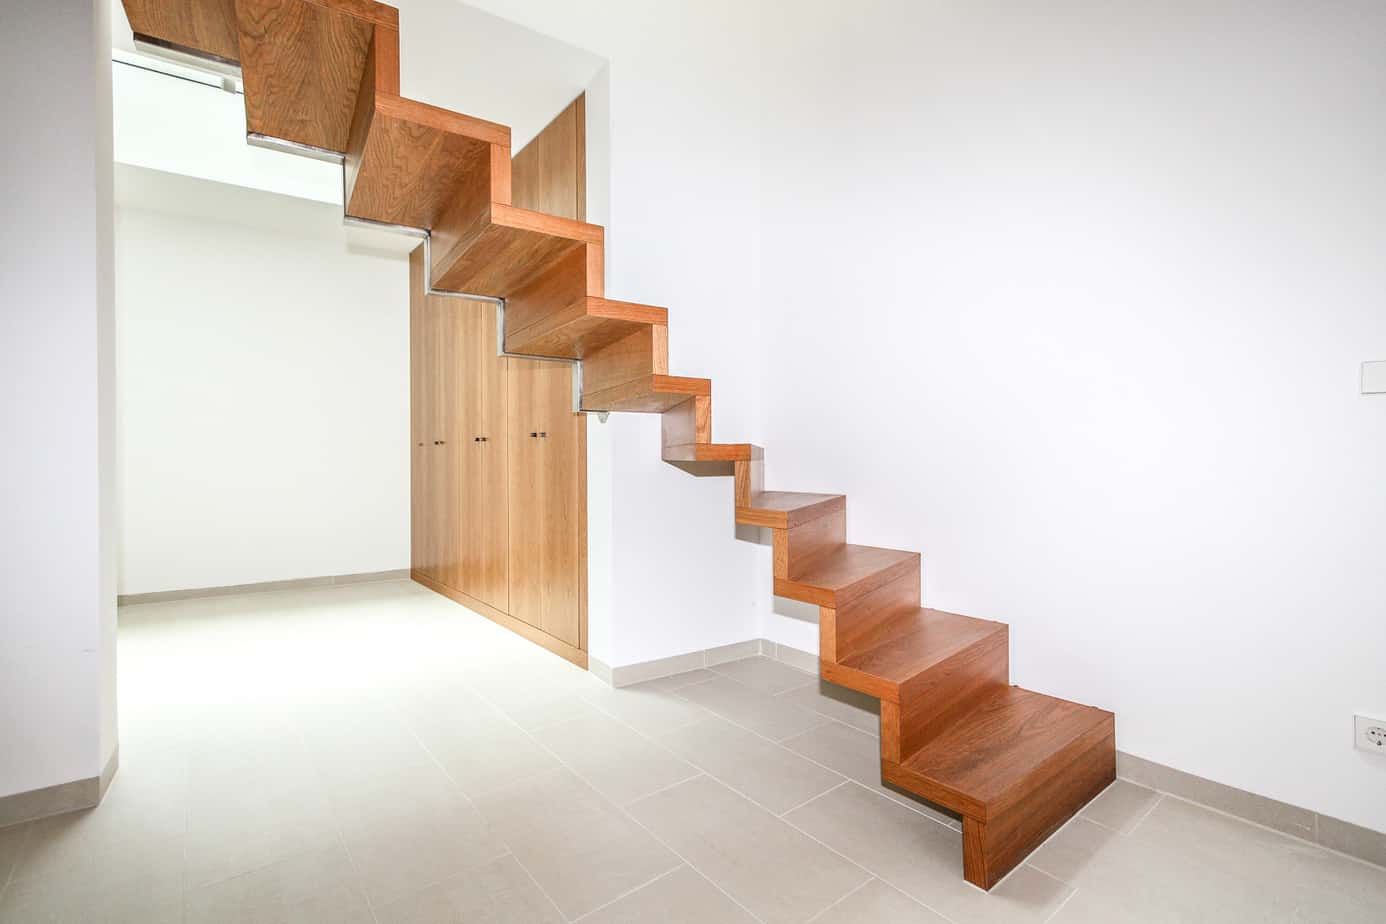 Diese Treppe vermittelt ein Treppenerlebnis der besonderen Art: Von vorne, von den beiden Seiten, von unten - aus jeder Perspektive wird das Faltwerk der Treppe in dem warmen Ton des edlen Holzes zum Blickfang in ihrem Wohnumfeld.